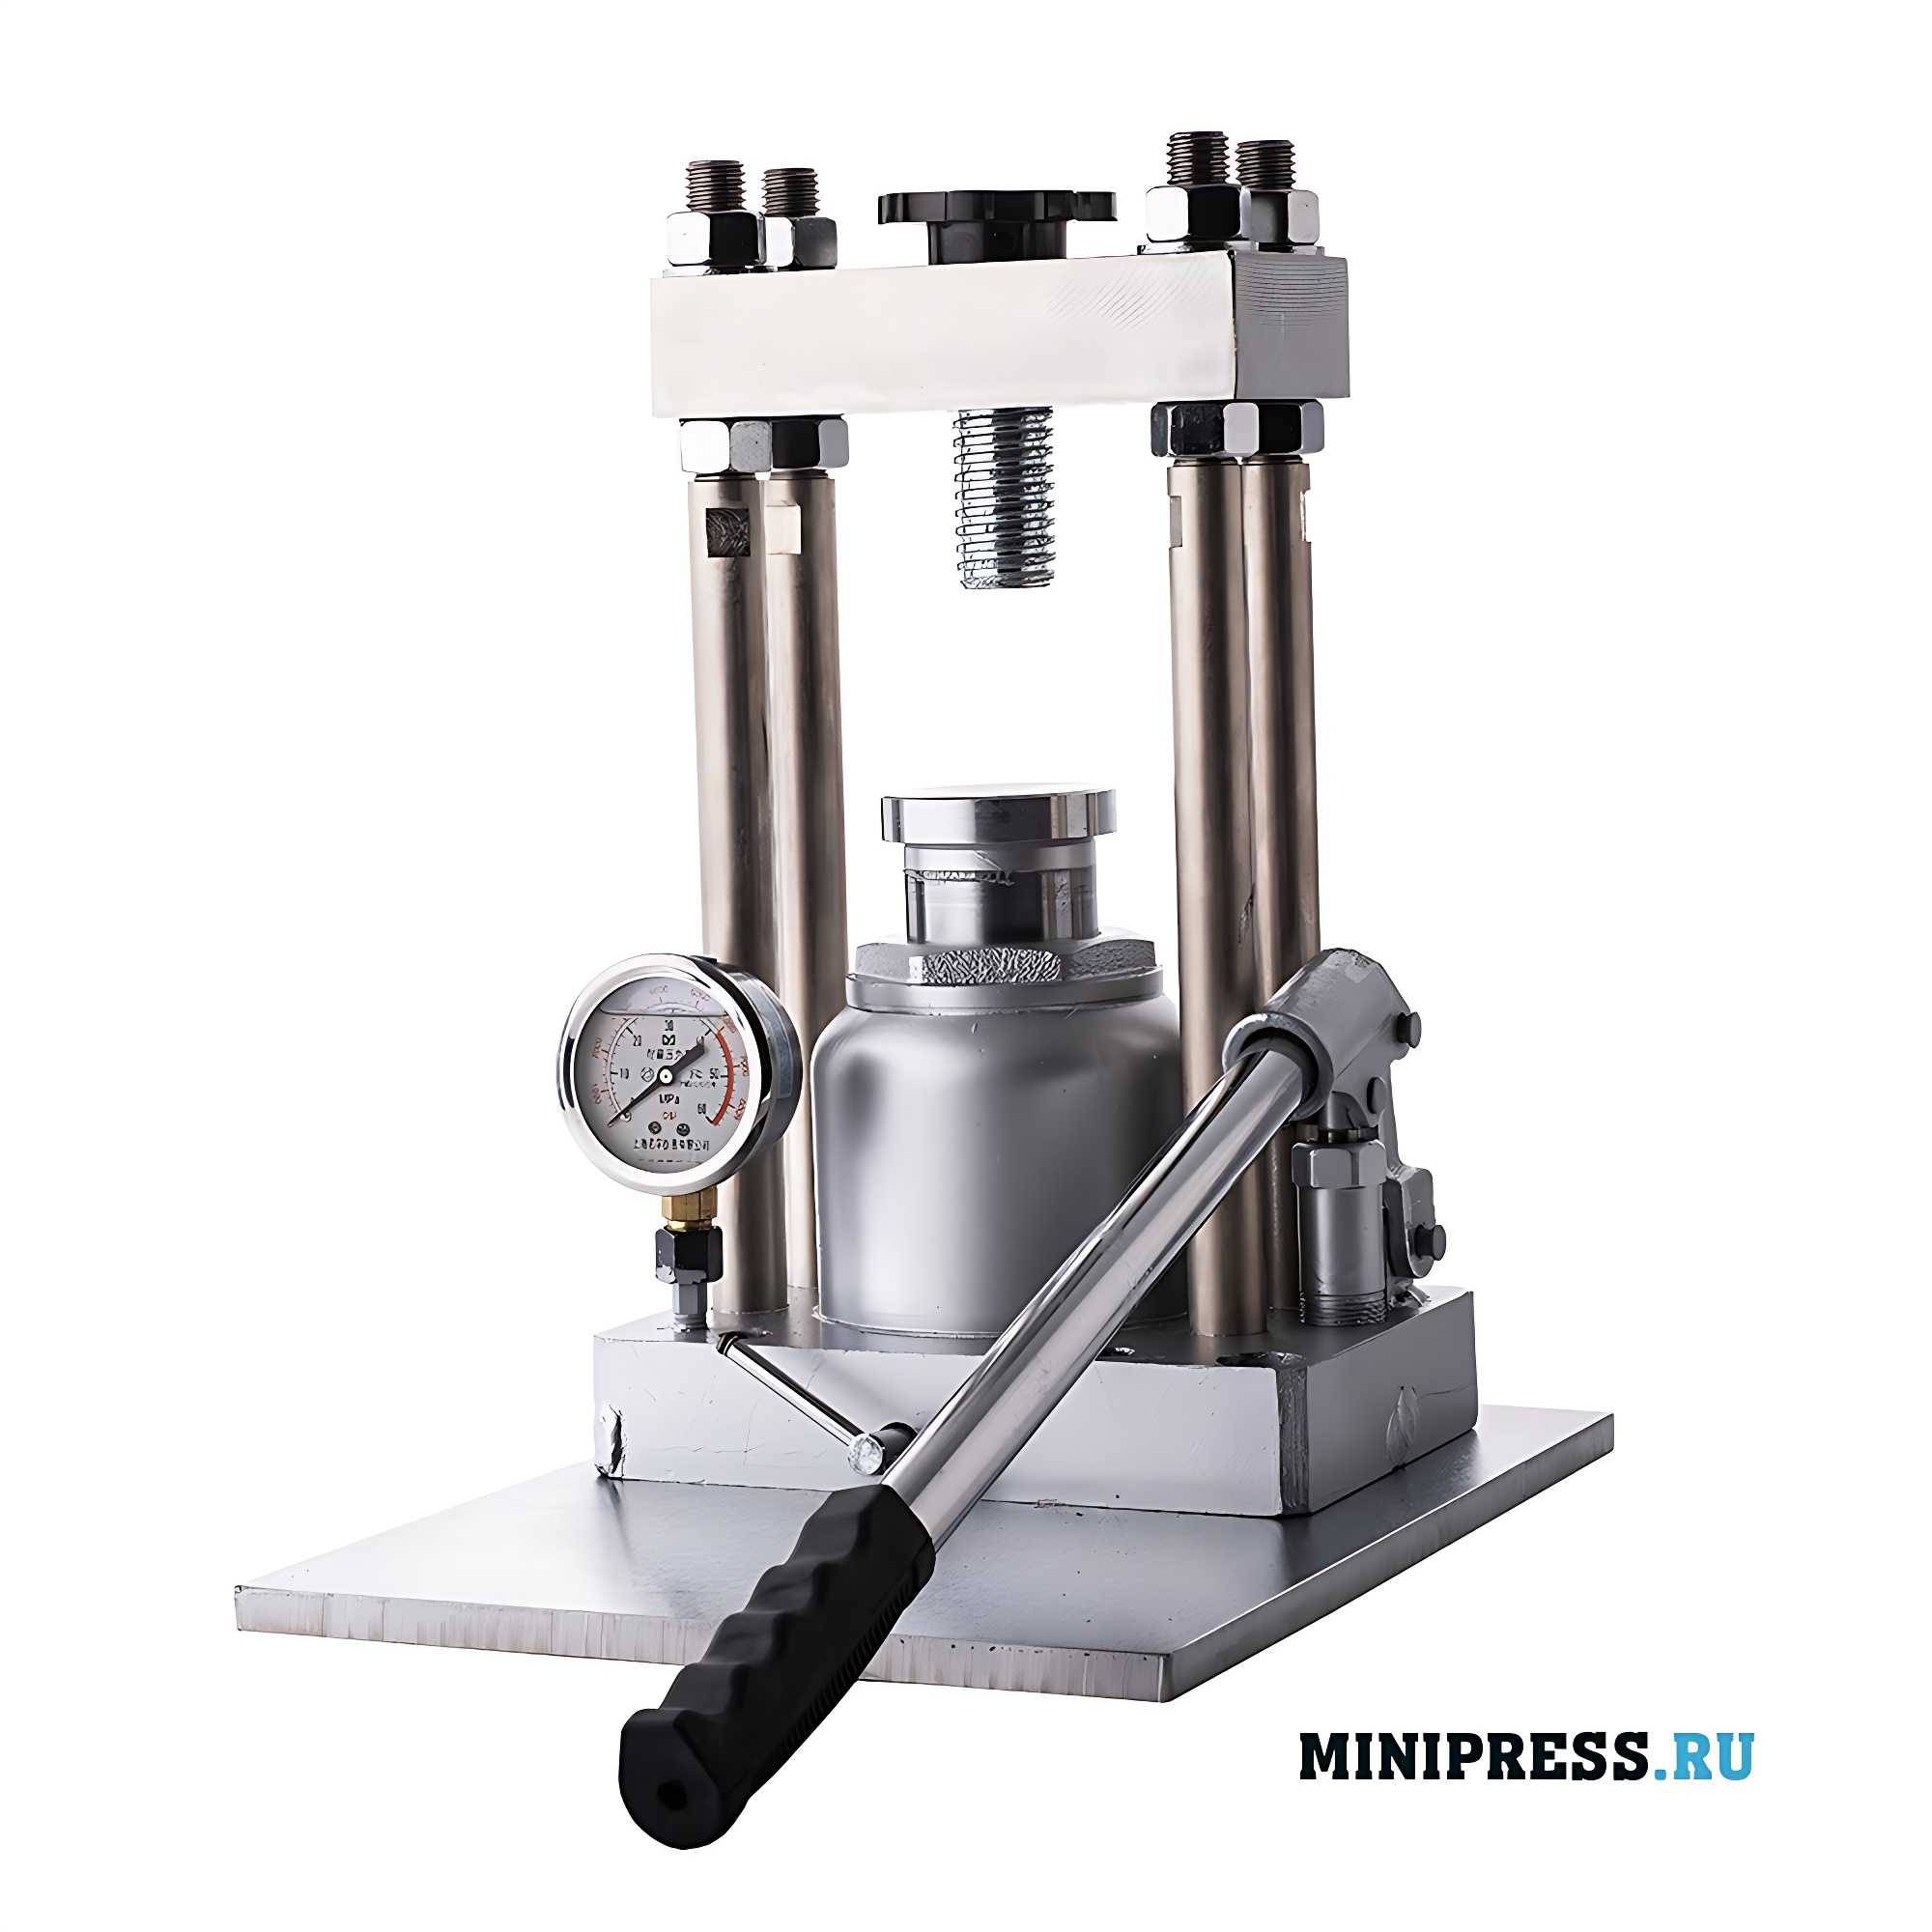 Laboratory hydraulic tablet press R-40